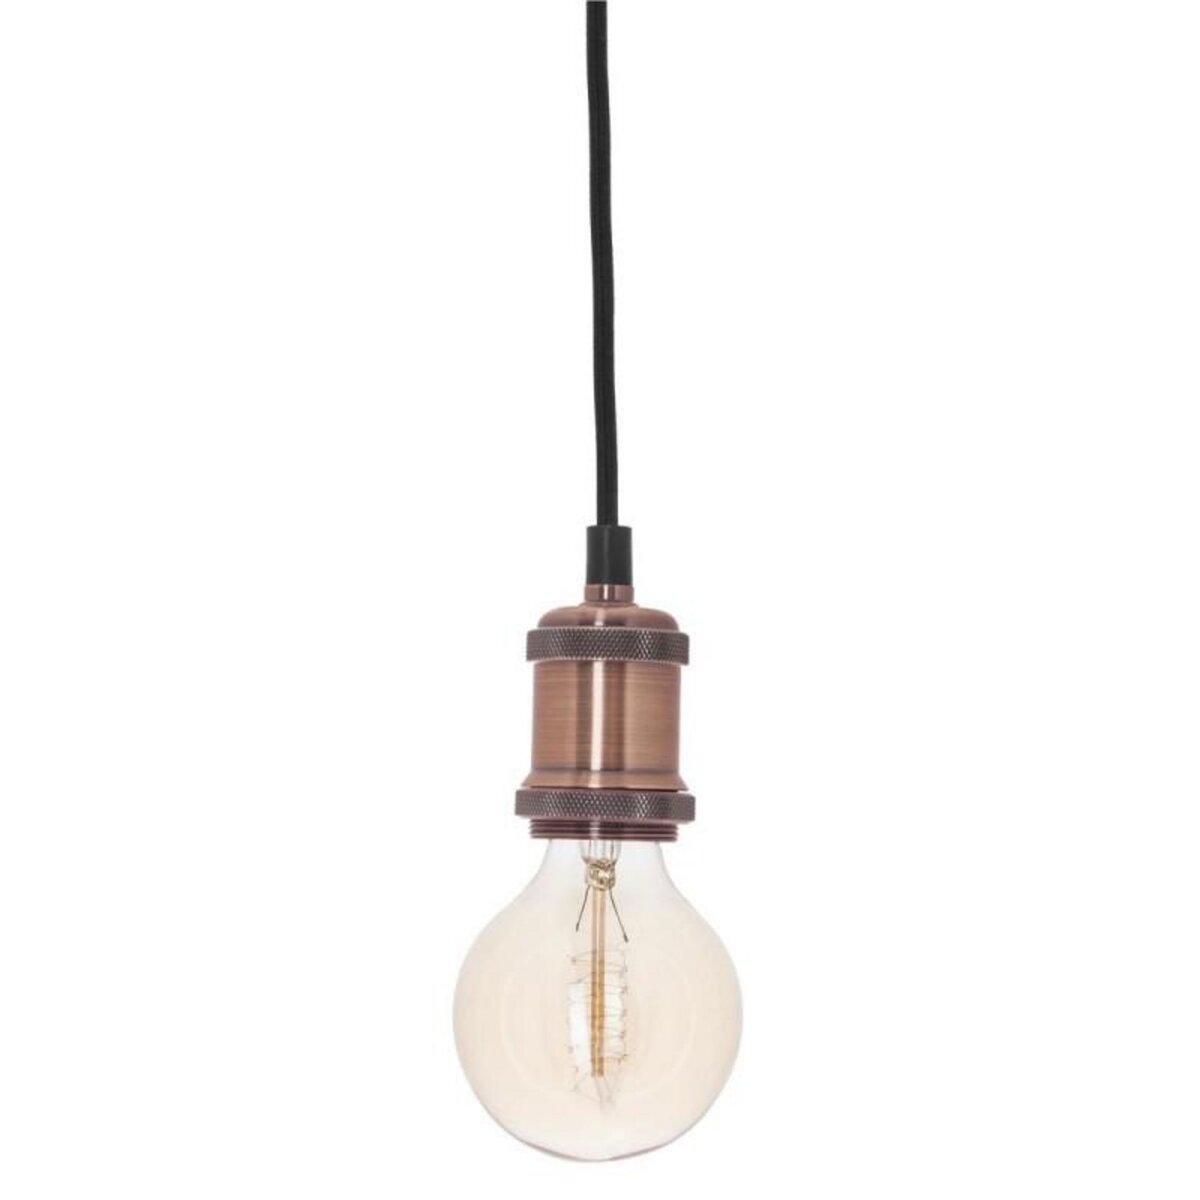  Lampe Suspension en Métal  Electra  7cm Cuivre